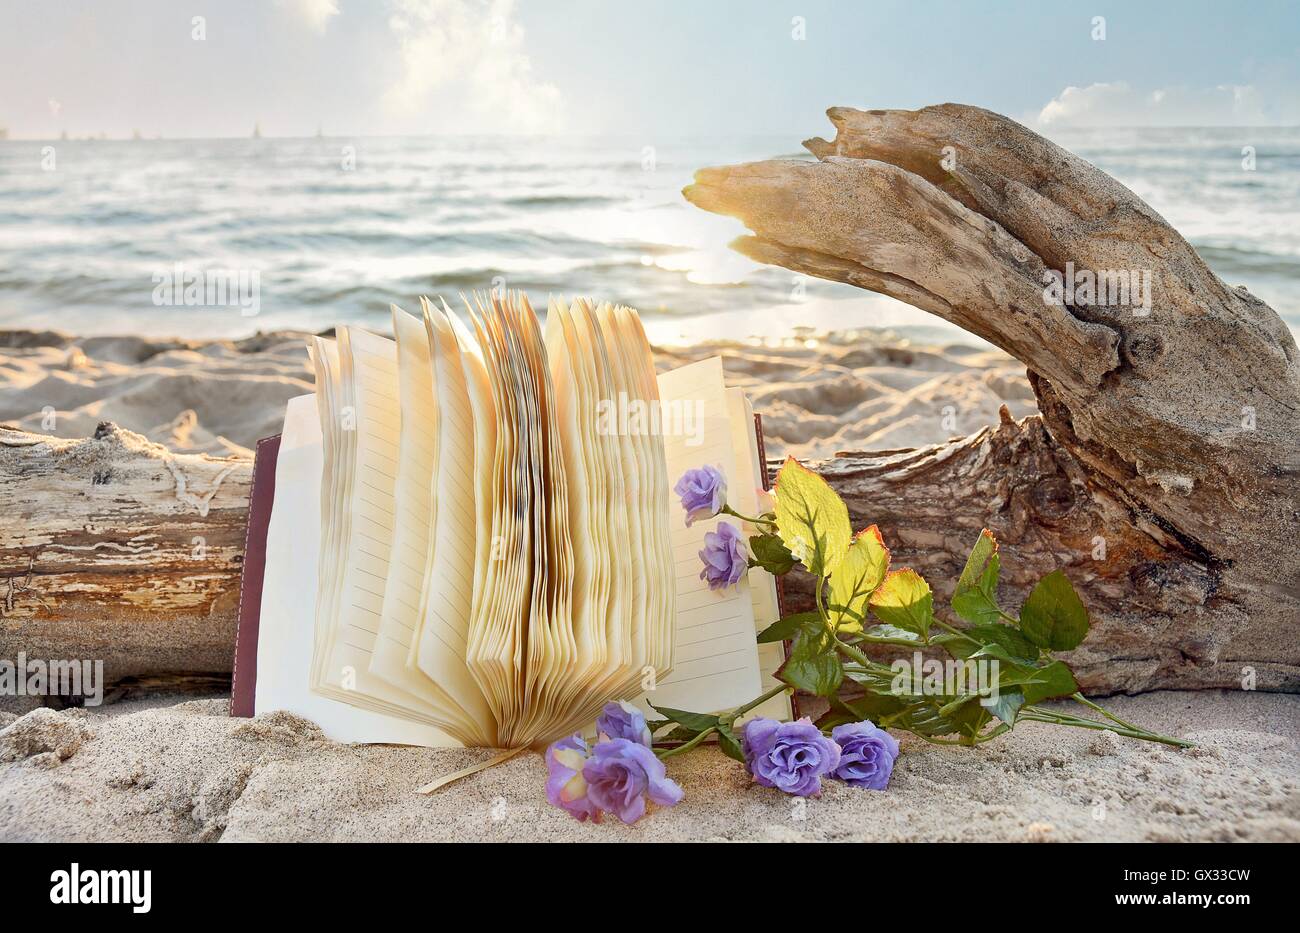 Open Journal et purple roses sur plage avec driftwood log Banque D'Images